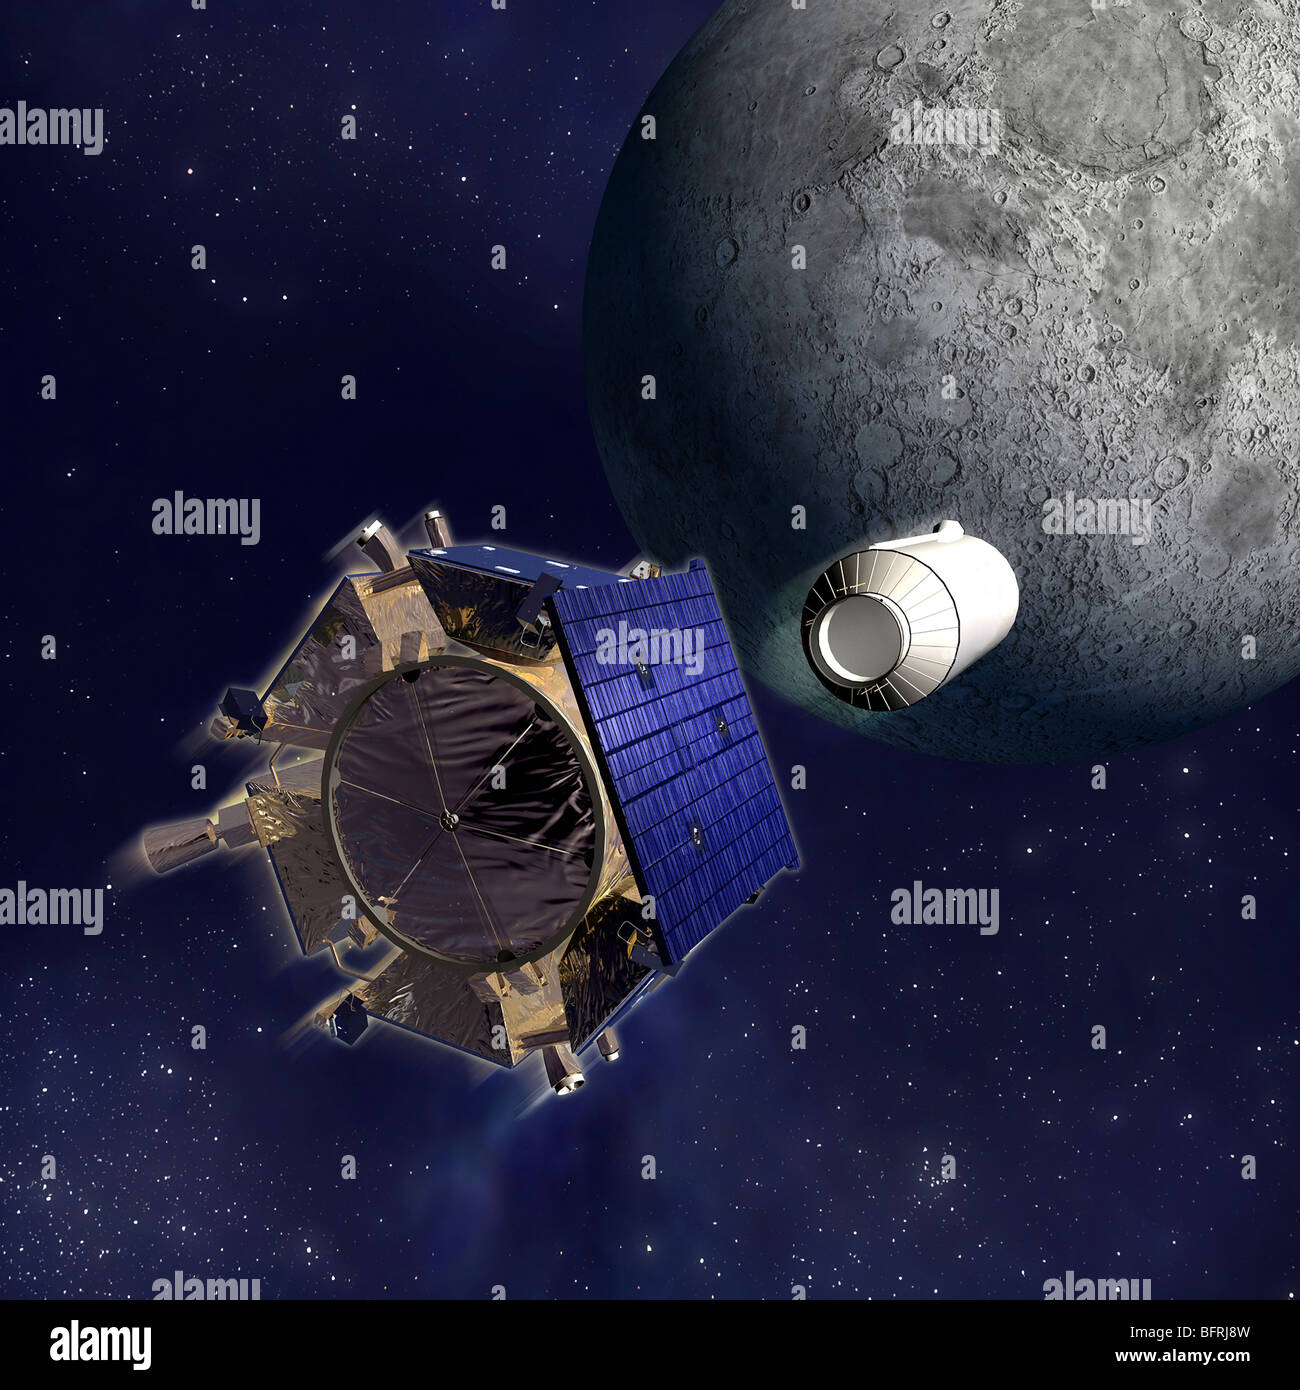 Des Künstlers Illustration des Lunar Crater Observation und Sensing Satellite (LCROSS). Stockfoto